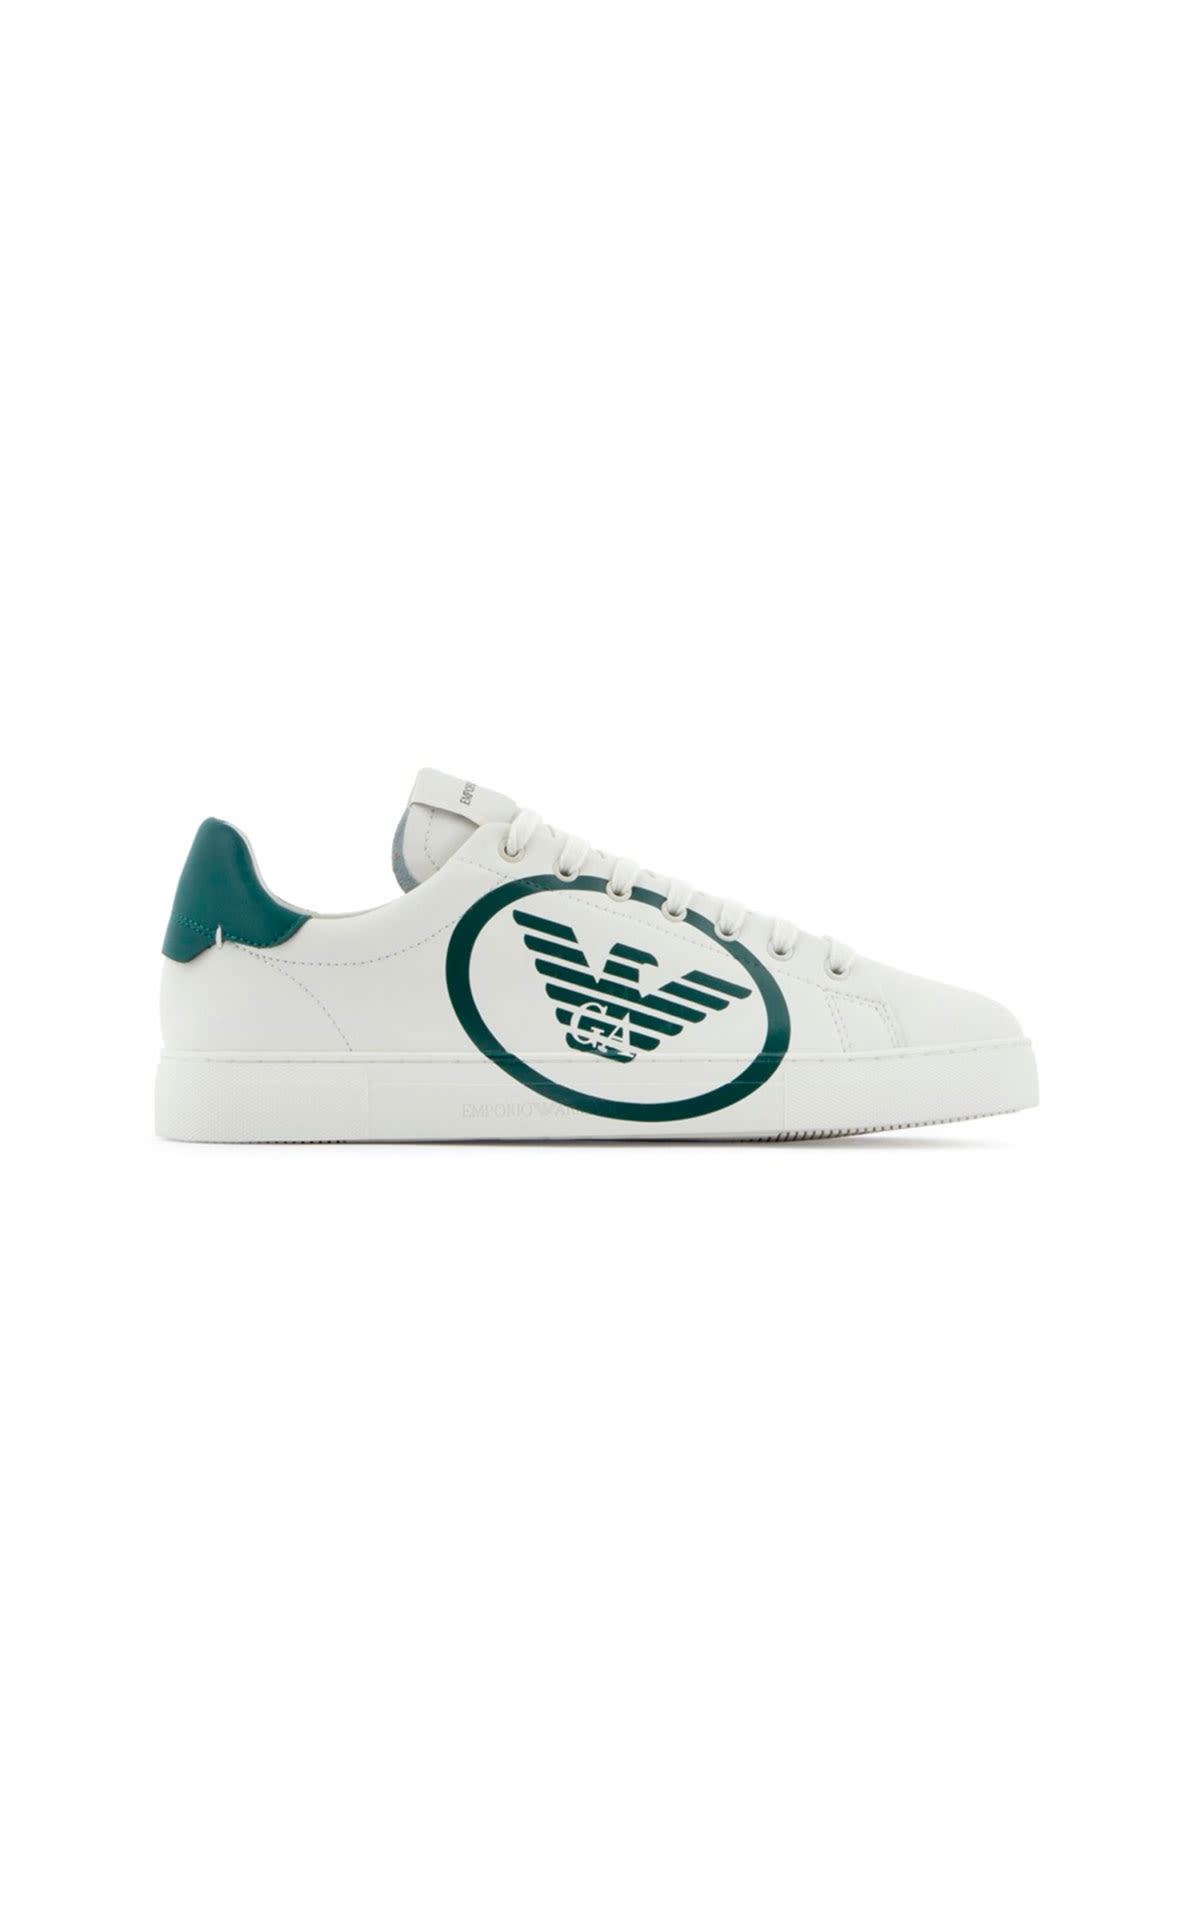 Sneaker blanca con logo de la marca armani